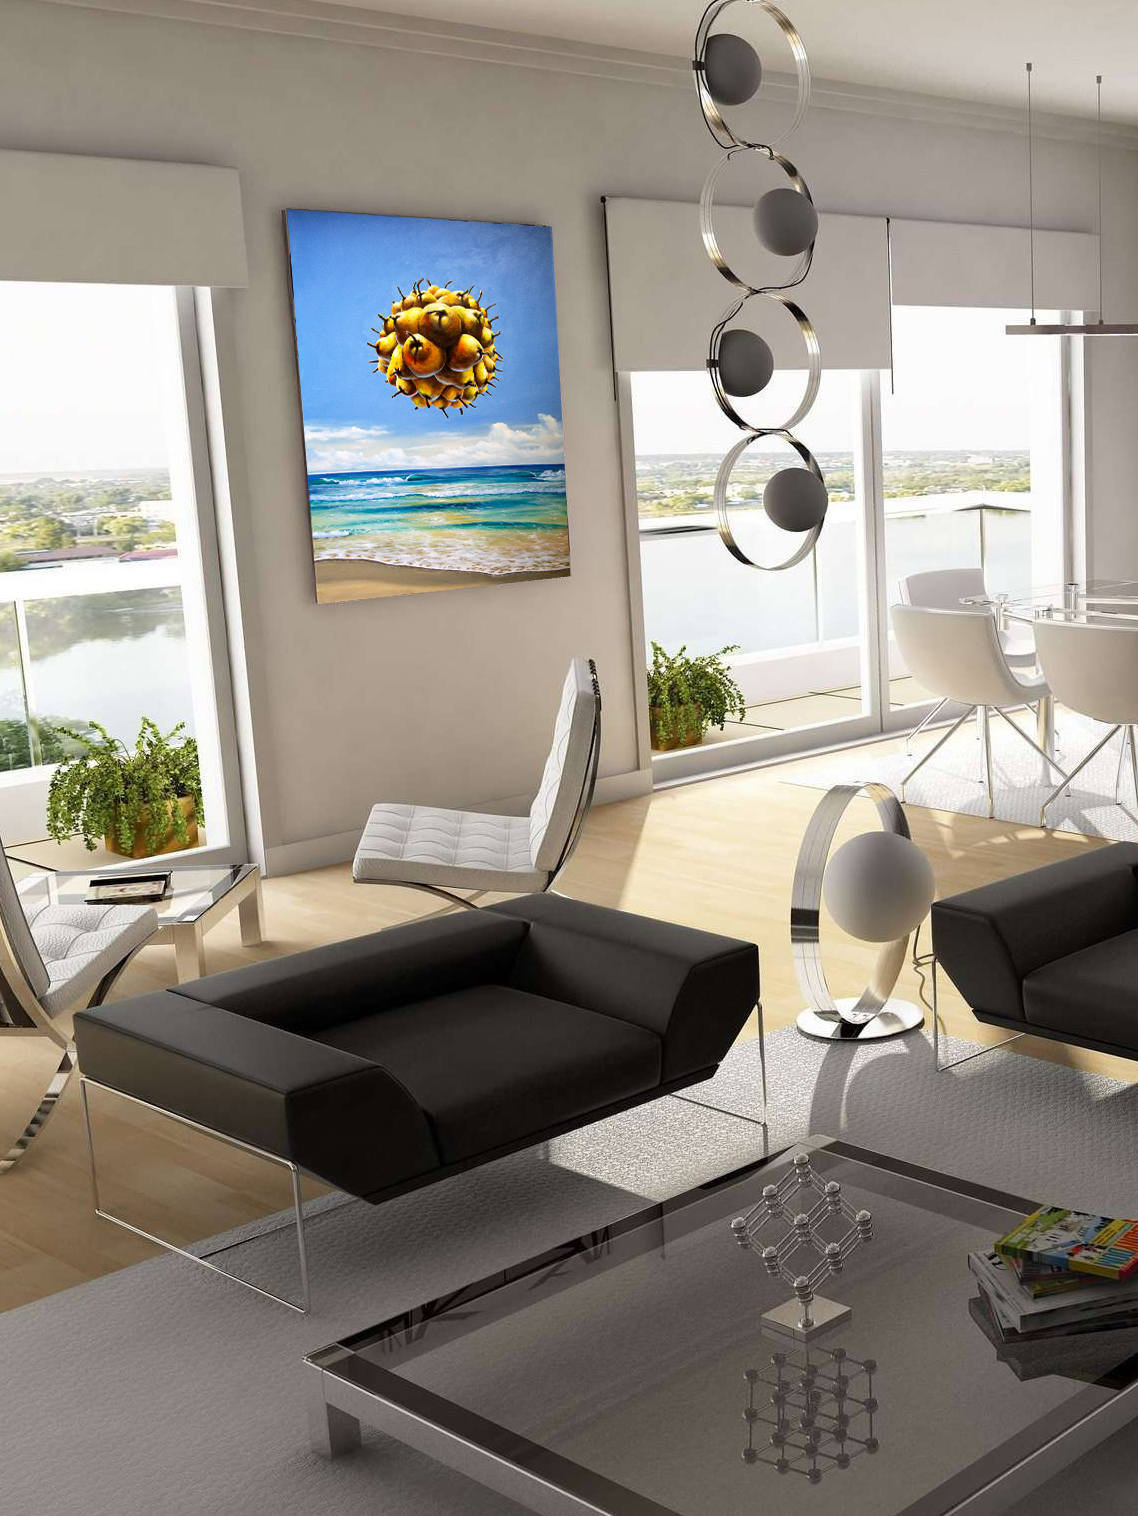 interior-design-artwork-on-wallinterior-design-artwork-on-wall-solar-pear-bill-higginson.jpg